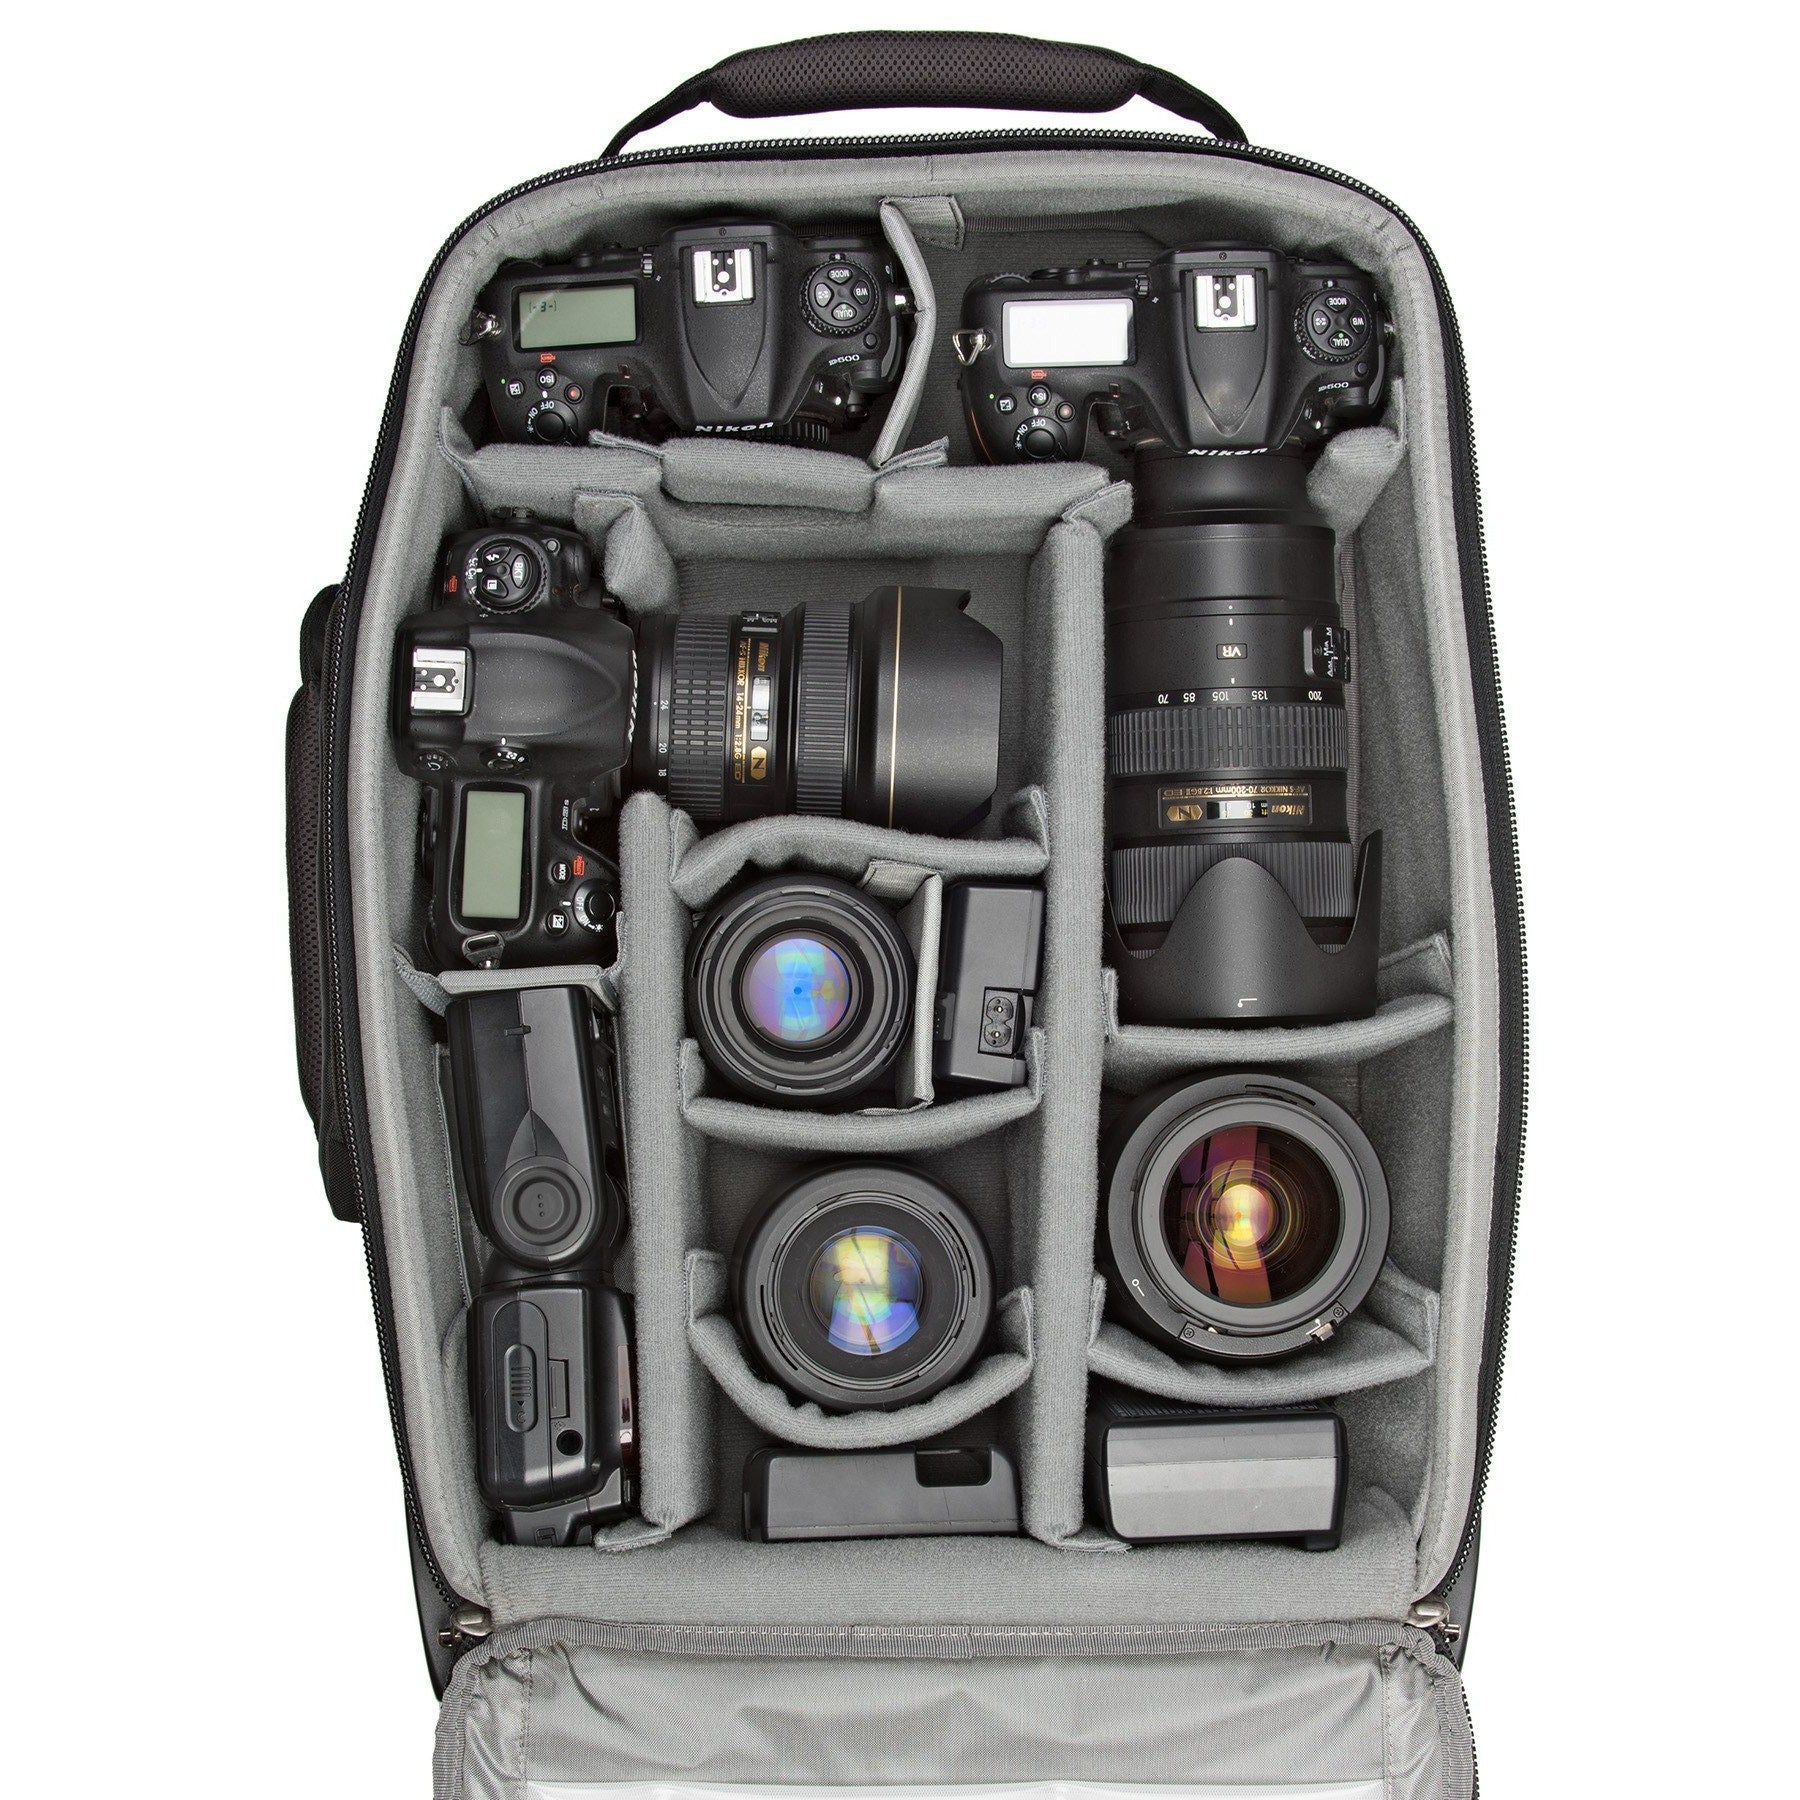 Shape Camera Bag Review